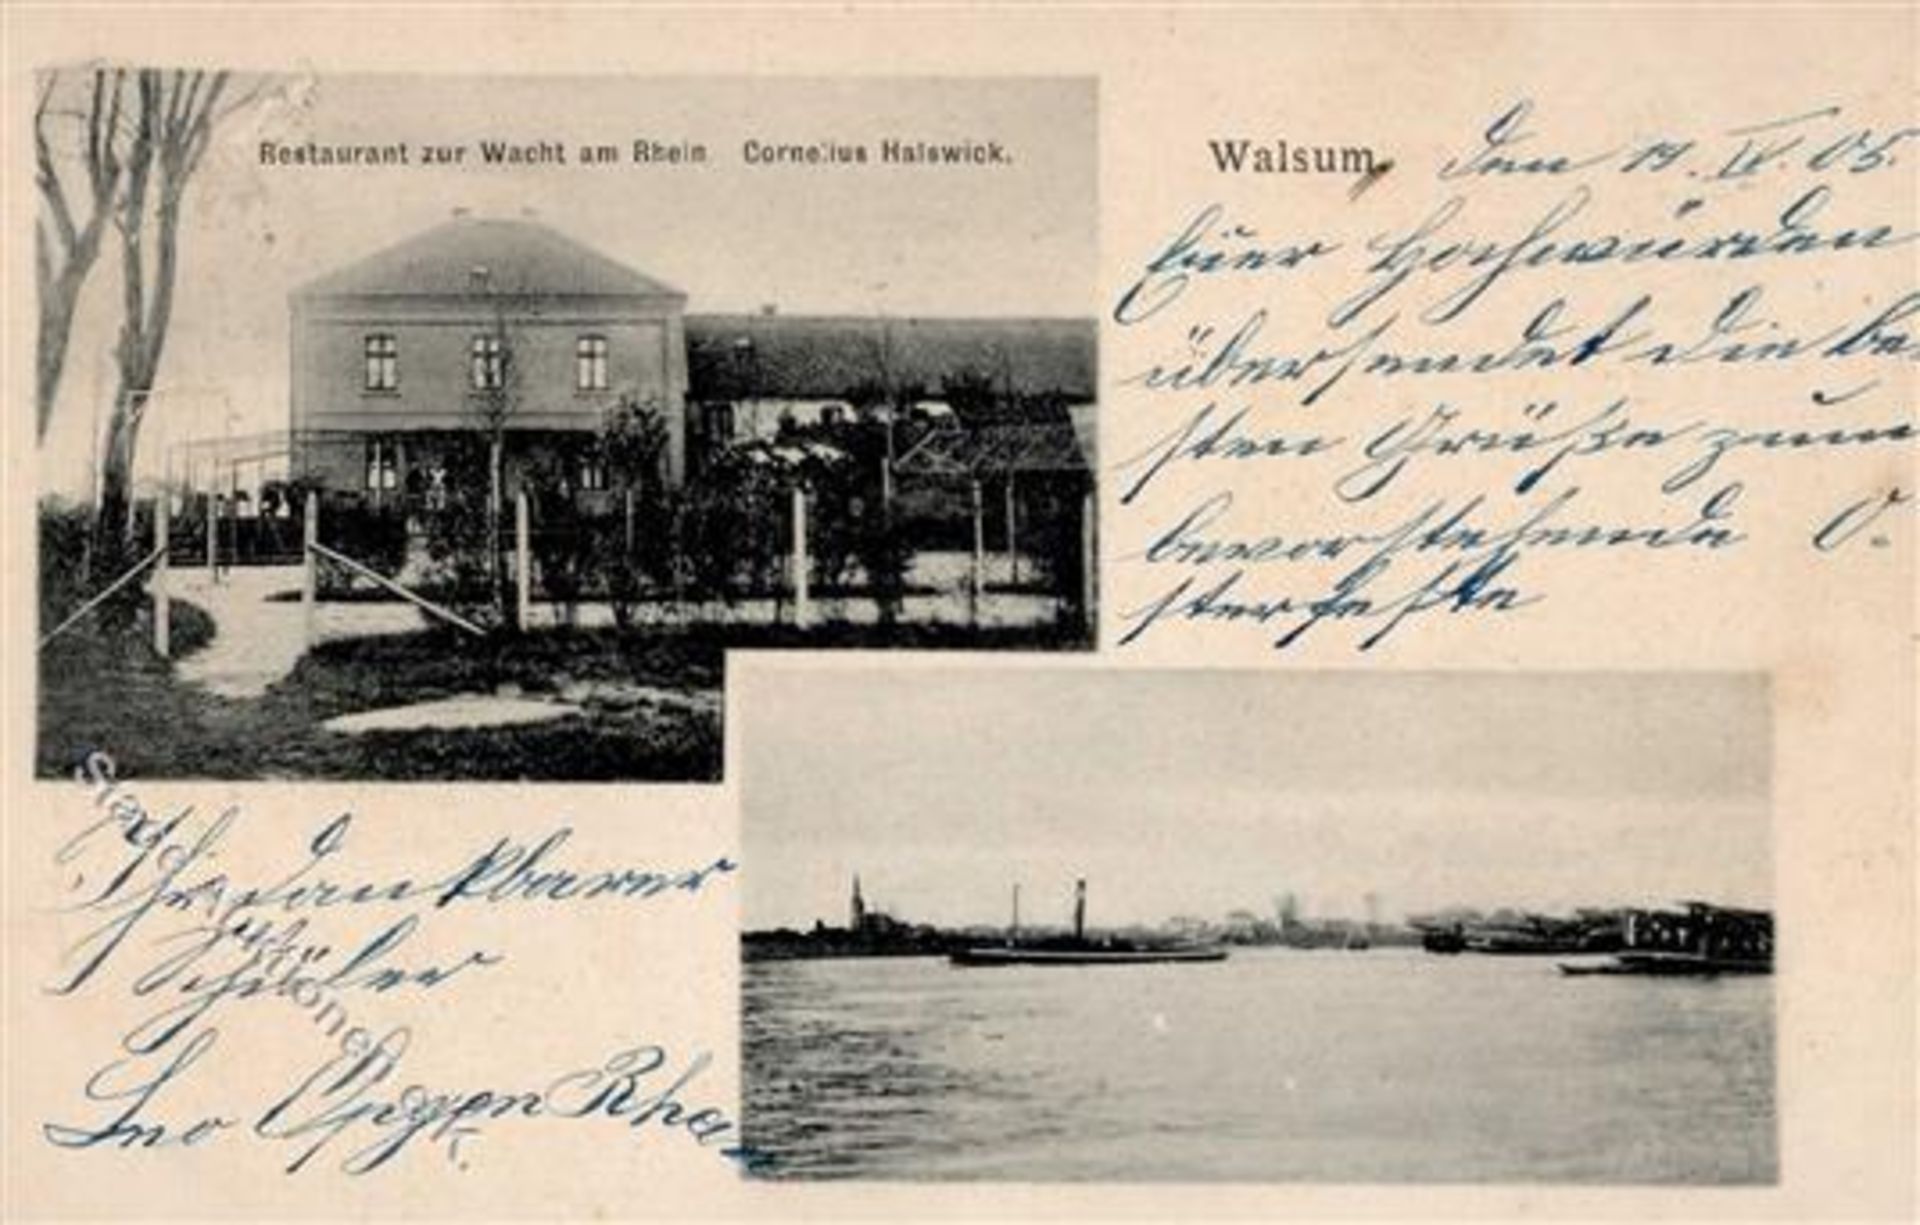 Walsum (4100) Gasthaus zur Wacht am Rhein Inh. Halswick 1905 I-II (fleckig)Dieses Los wird in